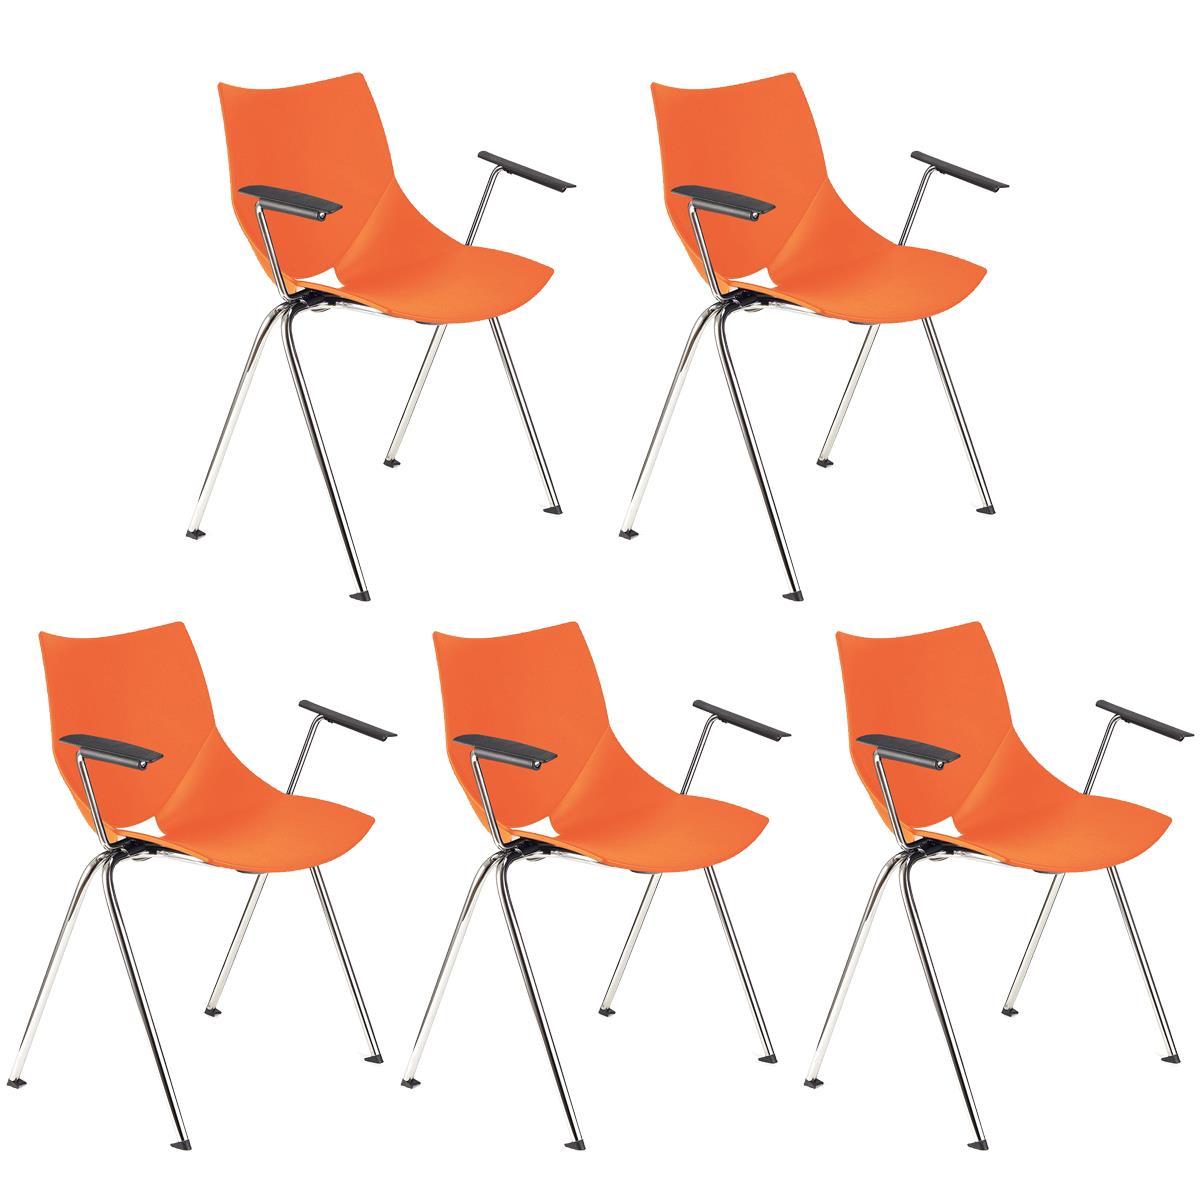 Lote 5 Cadeiras de Visita AMIR COM BRAÇOS, Confortável e Empilhável, Cor Laranja